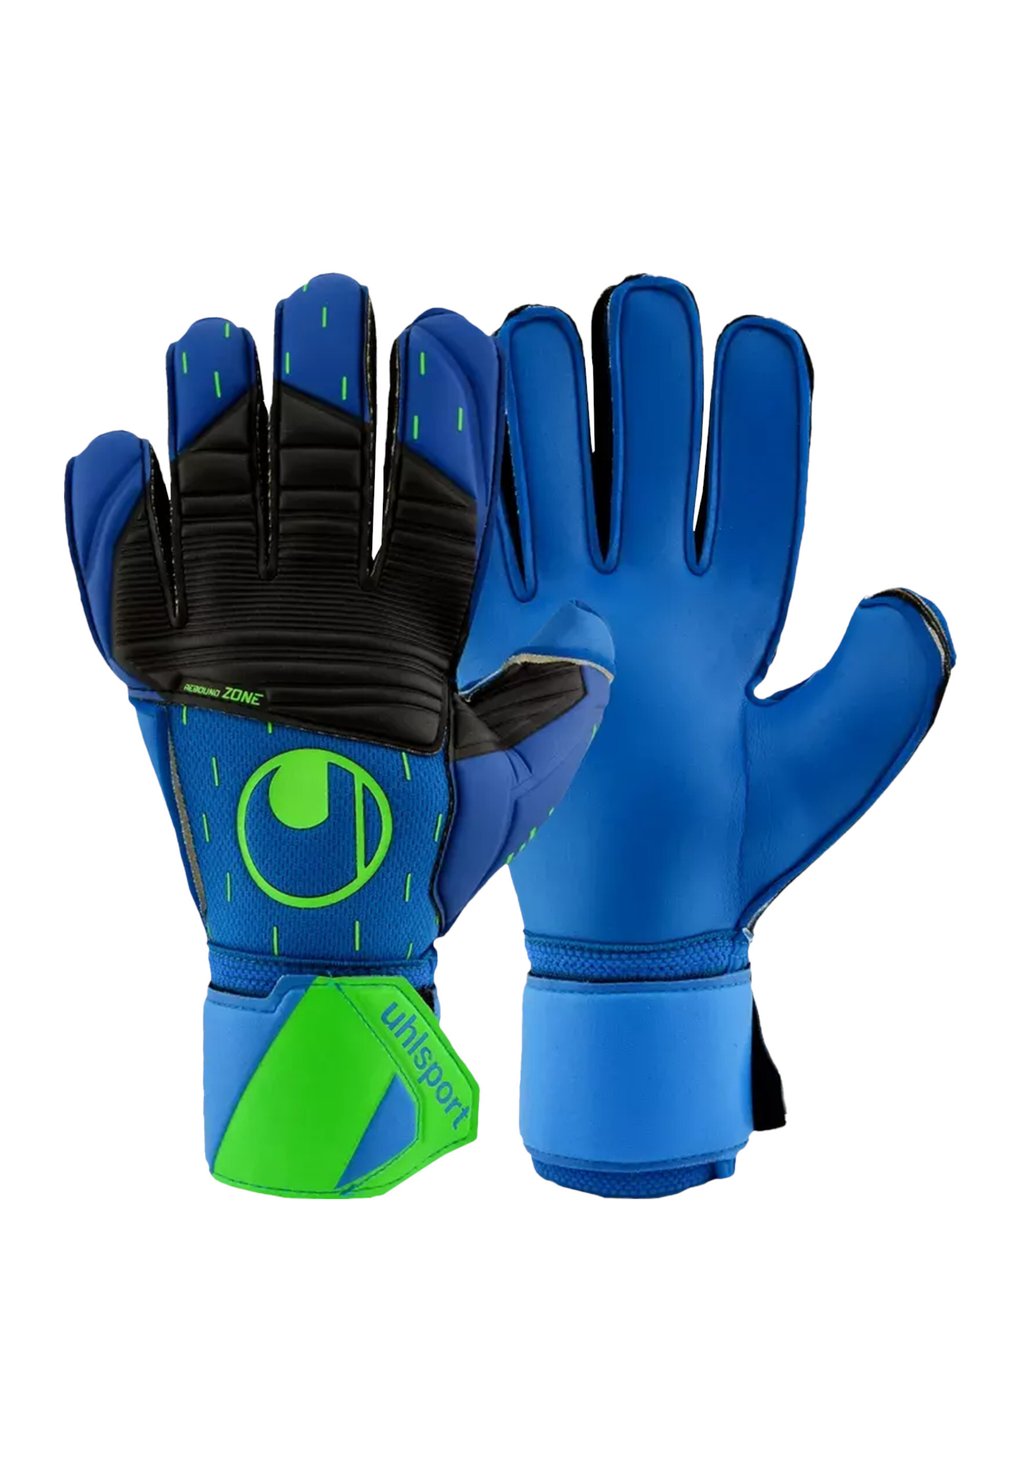 Перчатки вратарские Aquasoft Tw uhlsport, цвет blauschwarz